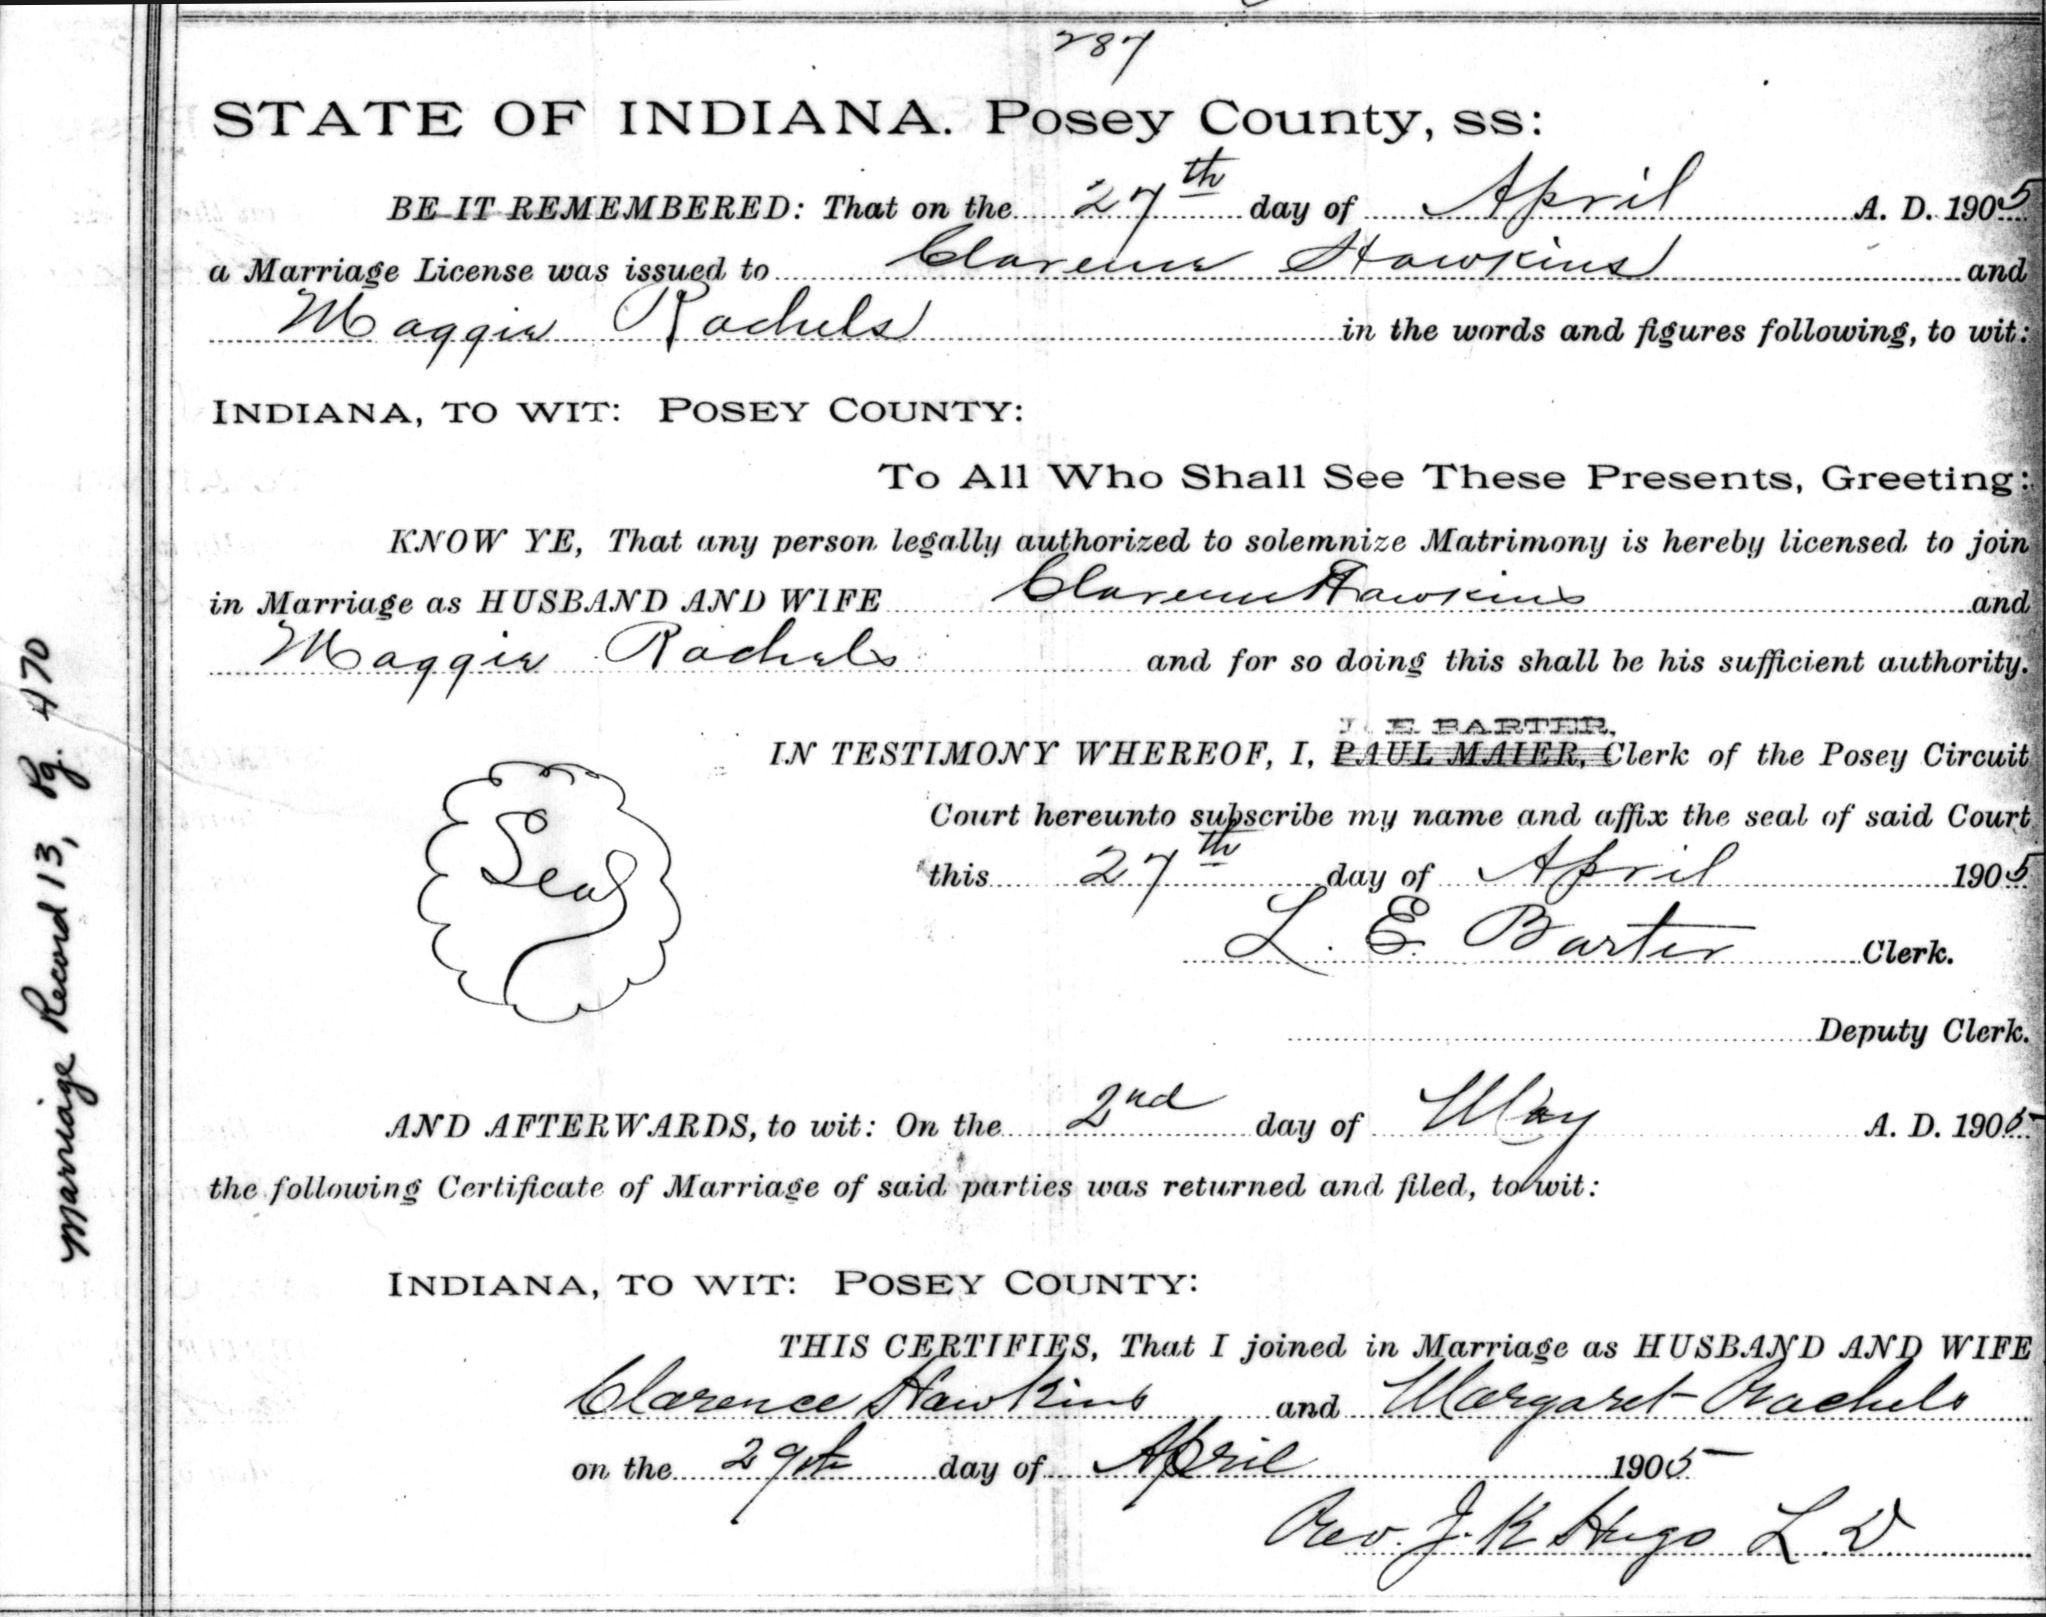 Margtaret Rachels ~ Clarence F. Hawkins Marriage Certificate